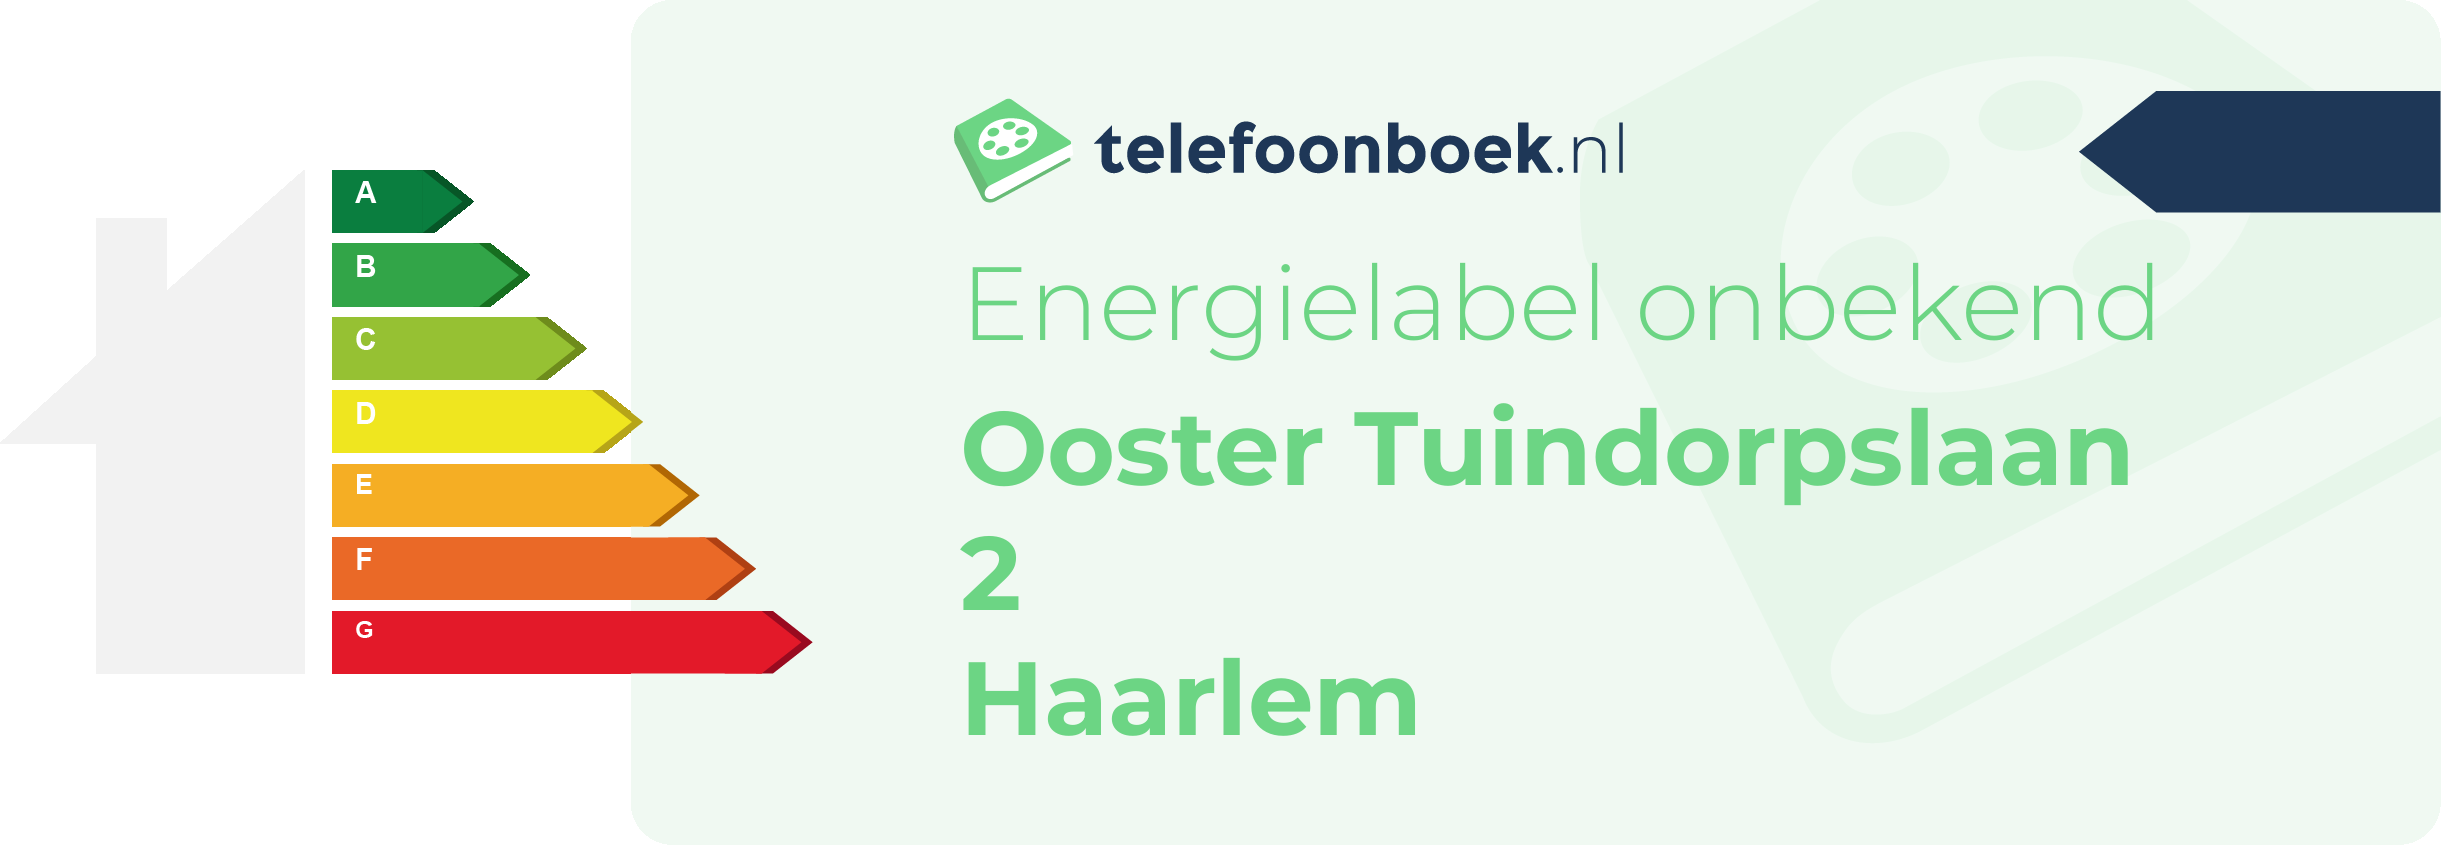 Energielabel Ooster Tuindorpslaan 2 Haarlem